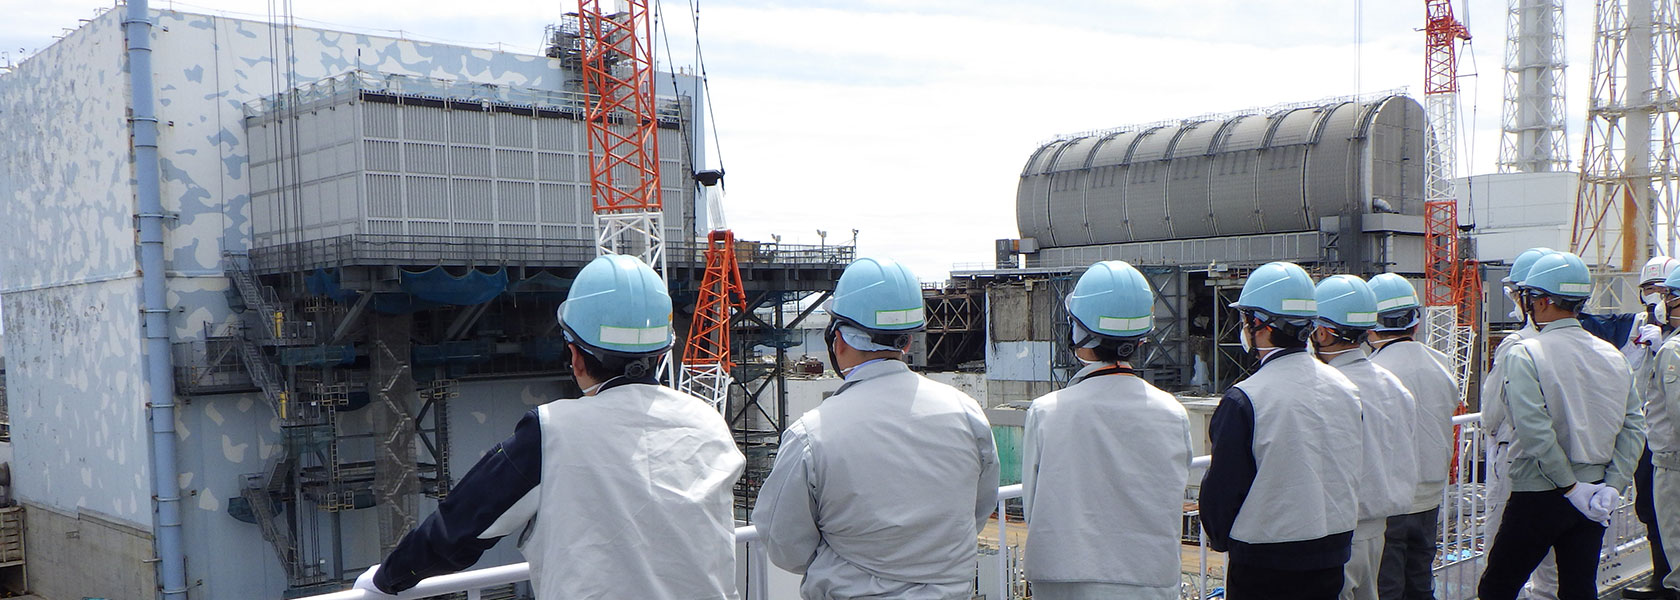 核电站的废炉工程进展